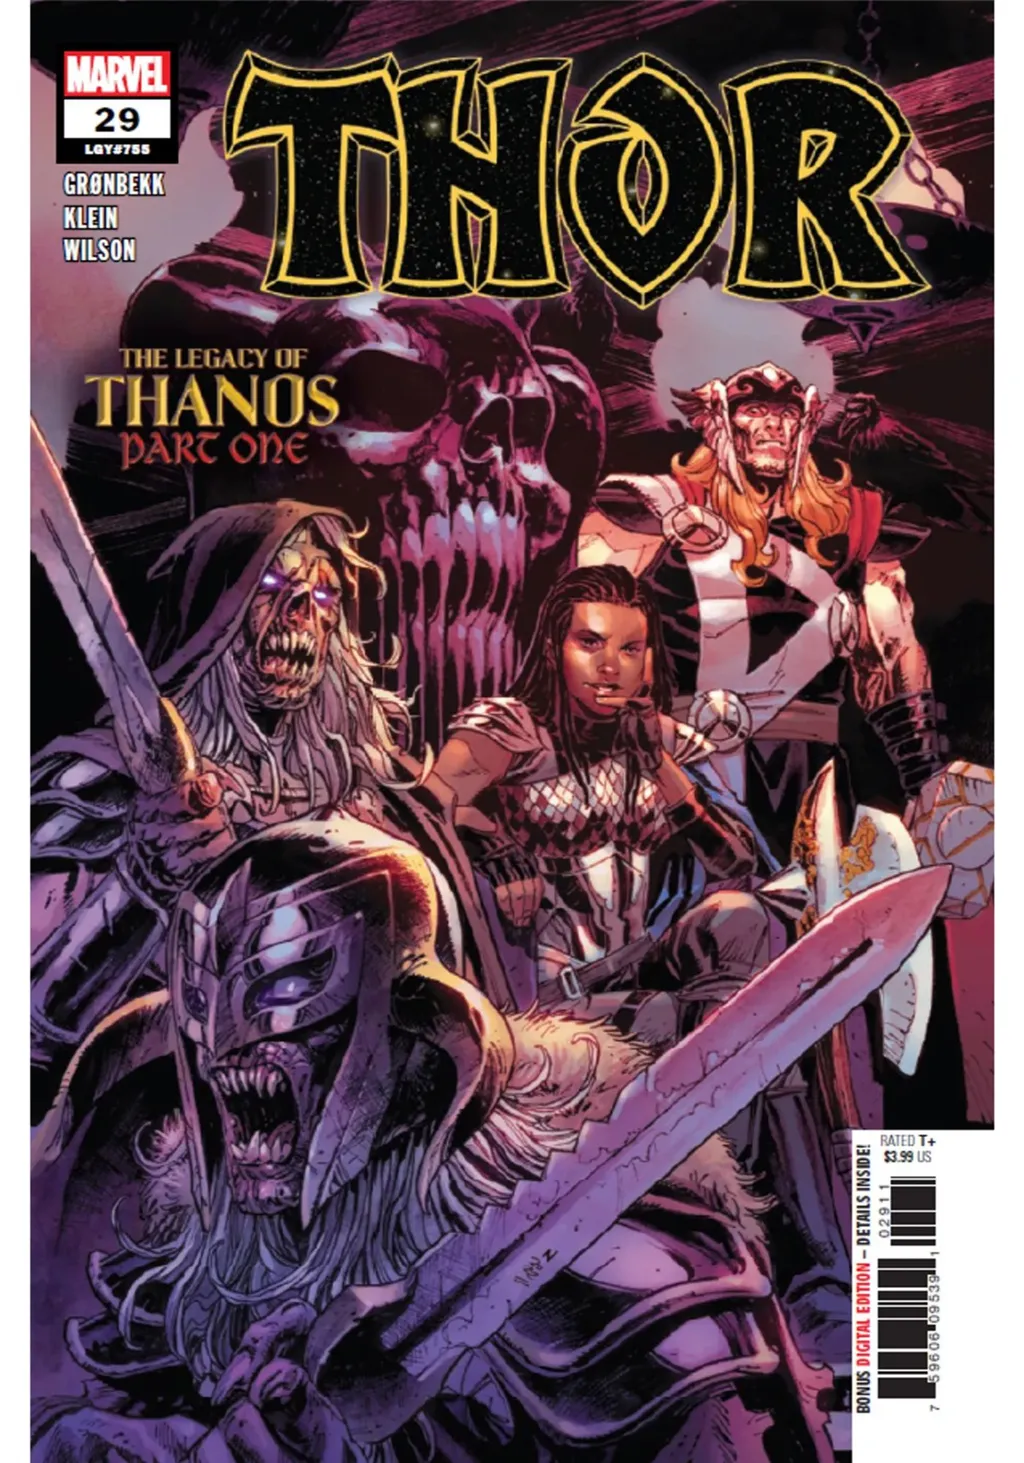 Marvel confirma a existência da sétima Joia do Infinito em HQ do Thor - 2